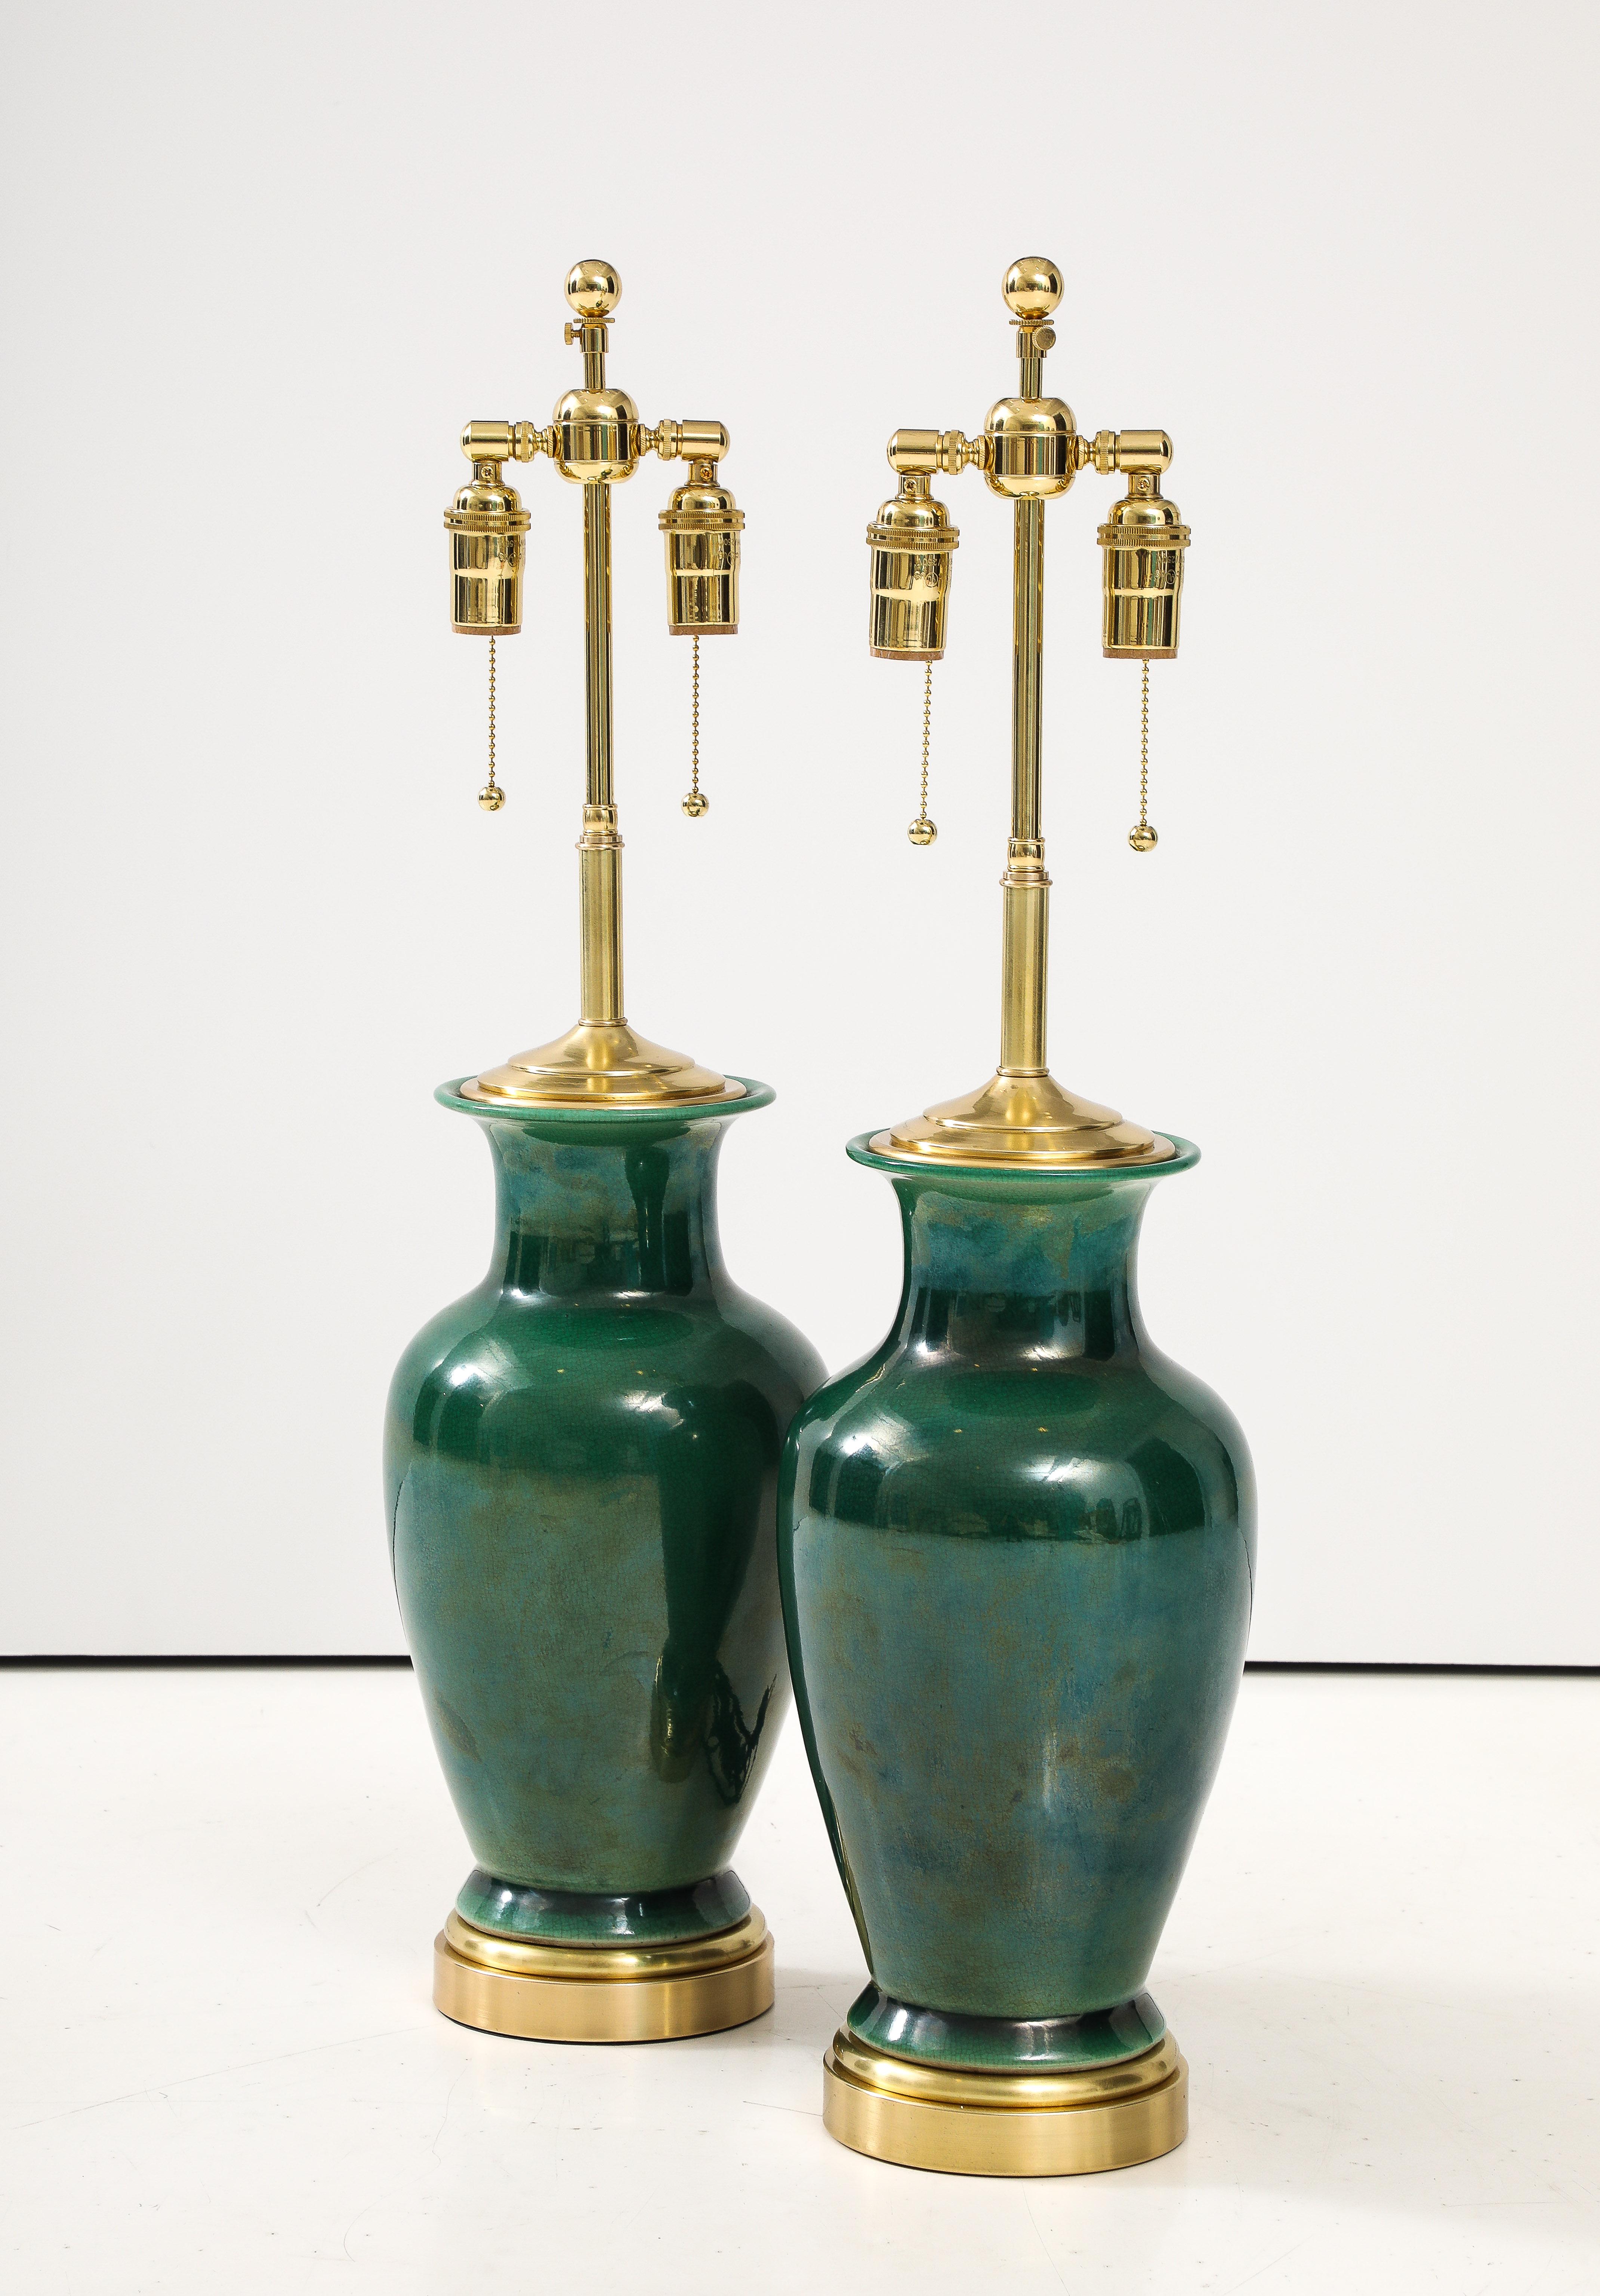 Magnifique paire de lampes japonaises en céramique en forme d'urne avec une finition de glaçure craquelée verte.
Les lampes ont été refaites à neuf avec des grappes doubles réglables en laiton poli et des lampes à incandescence. 
Corde de soie et de